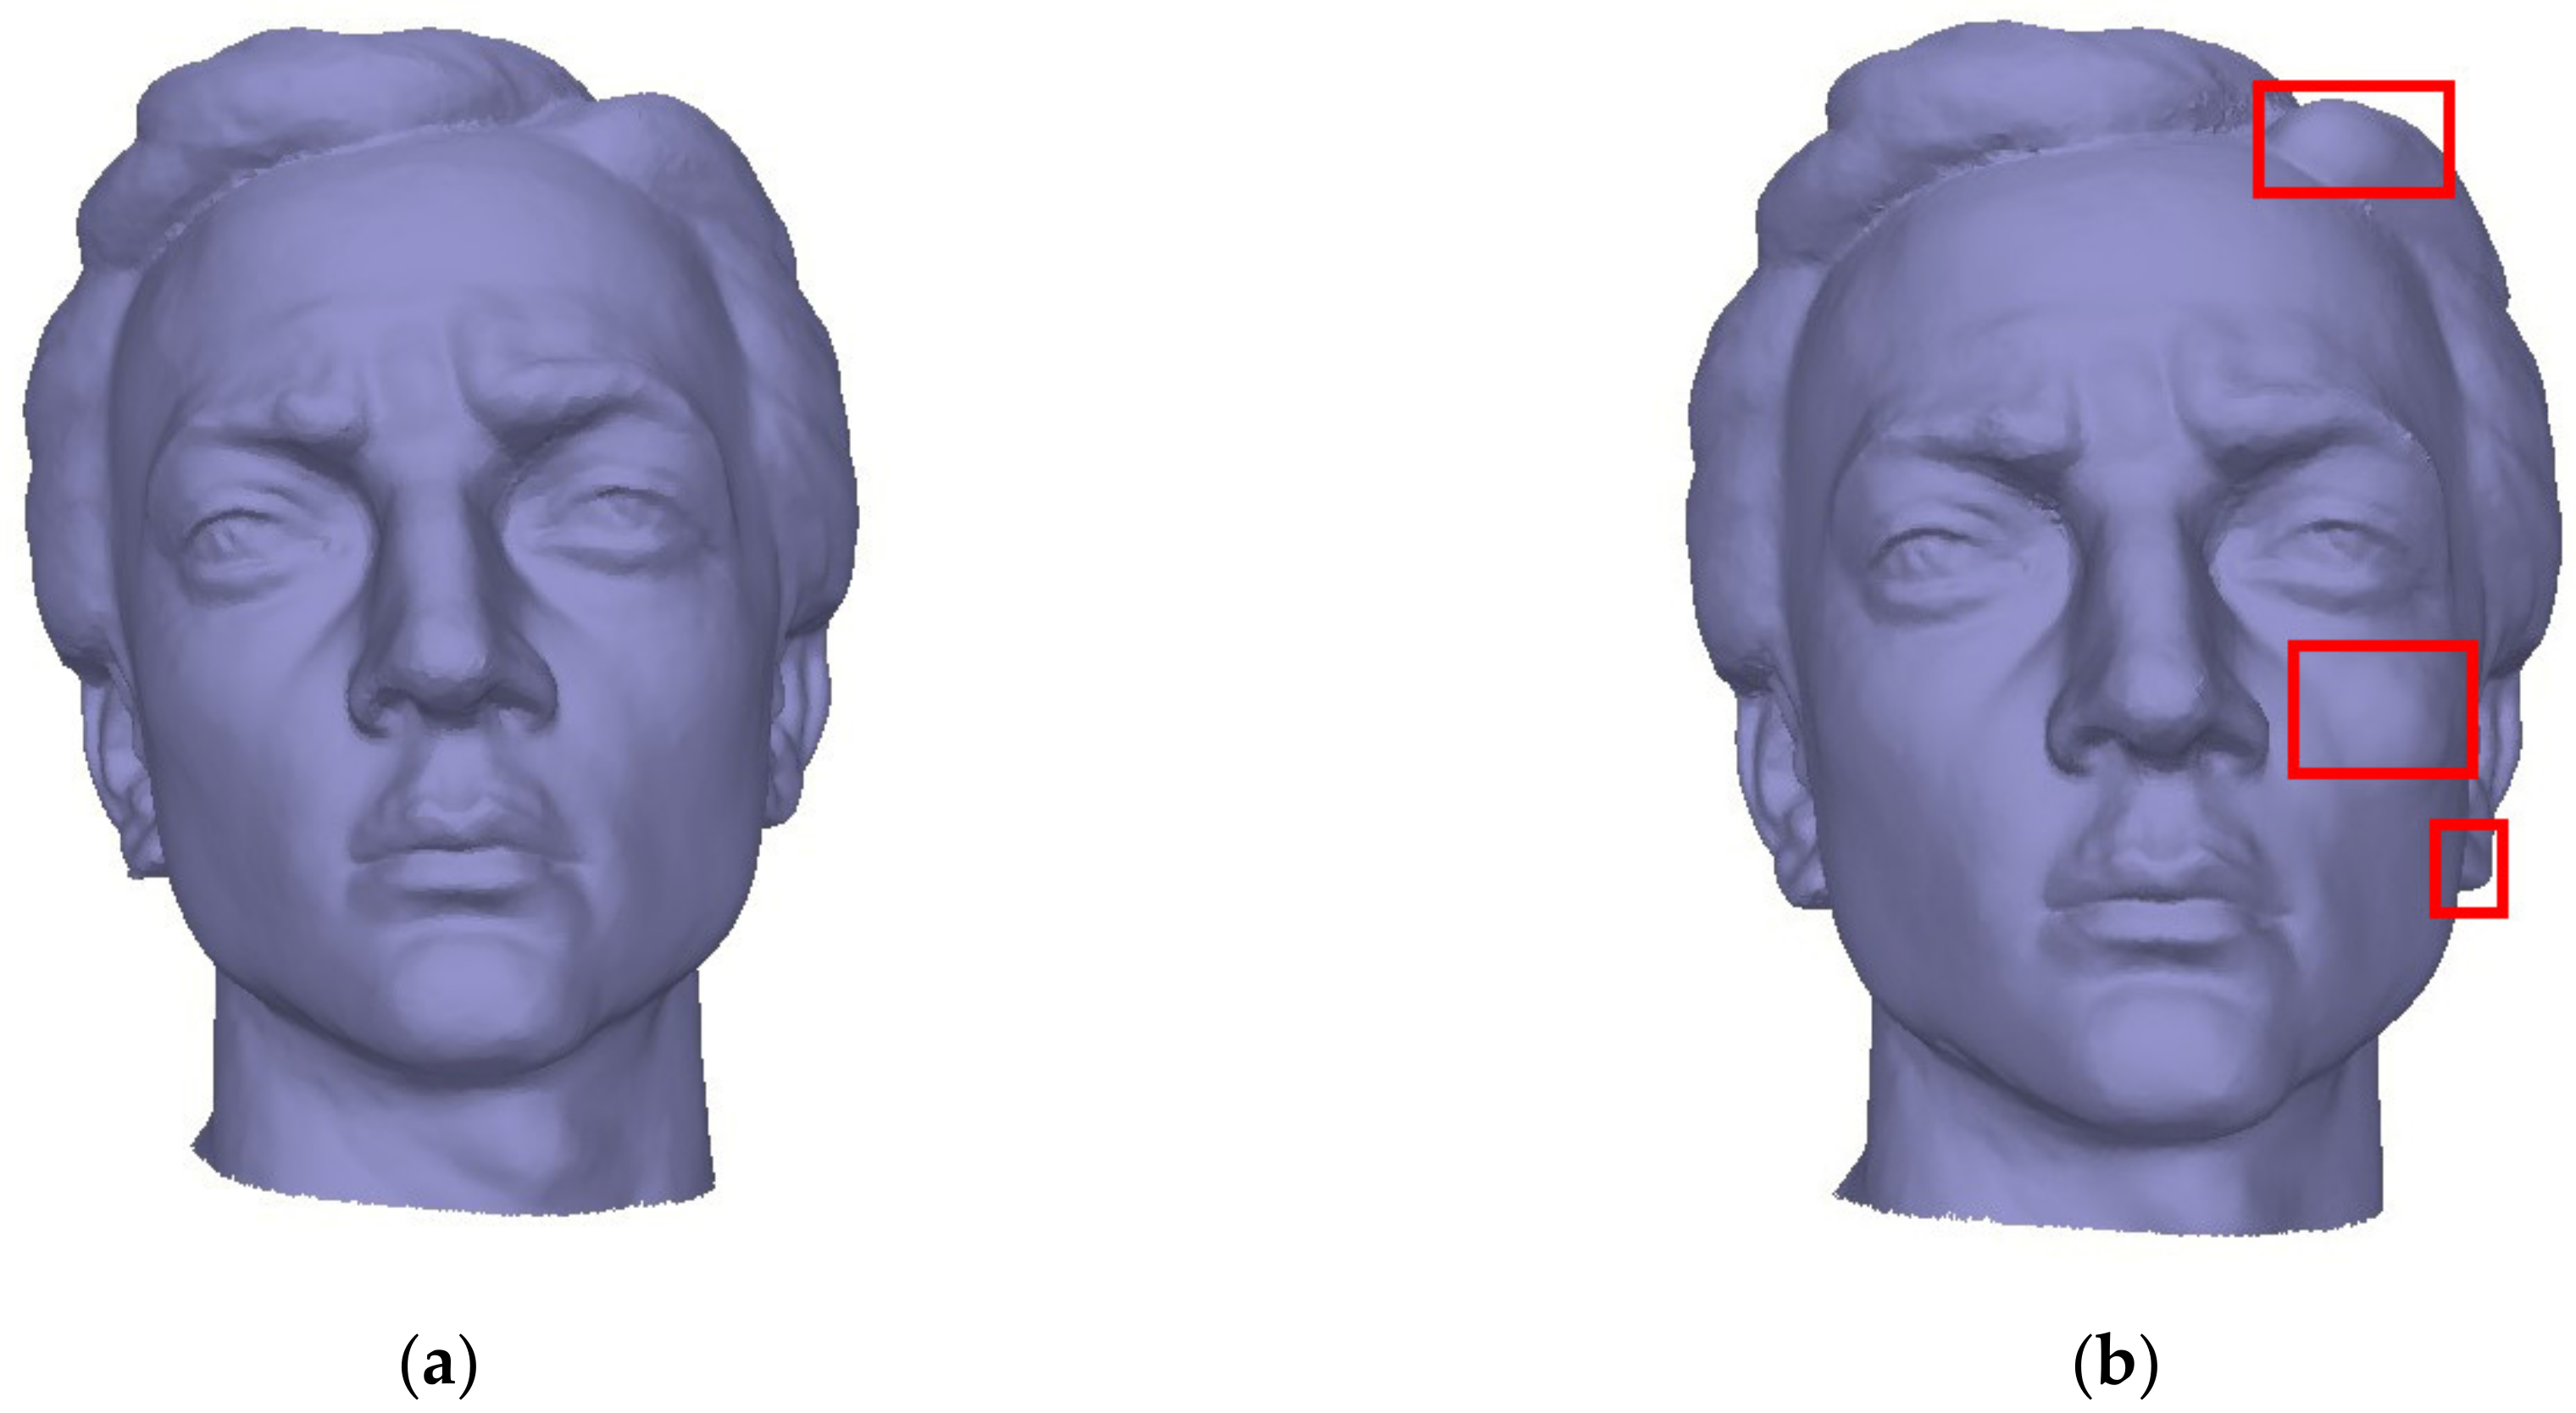 3D model Clay Buddha Head VR / AR / low-poly